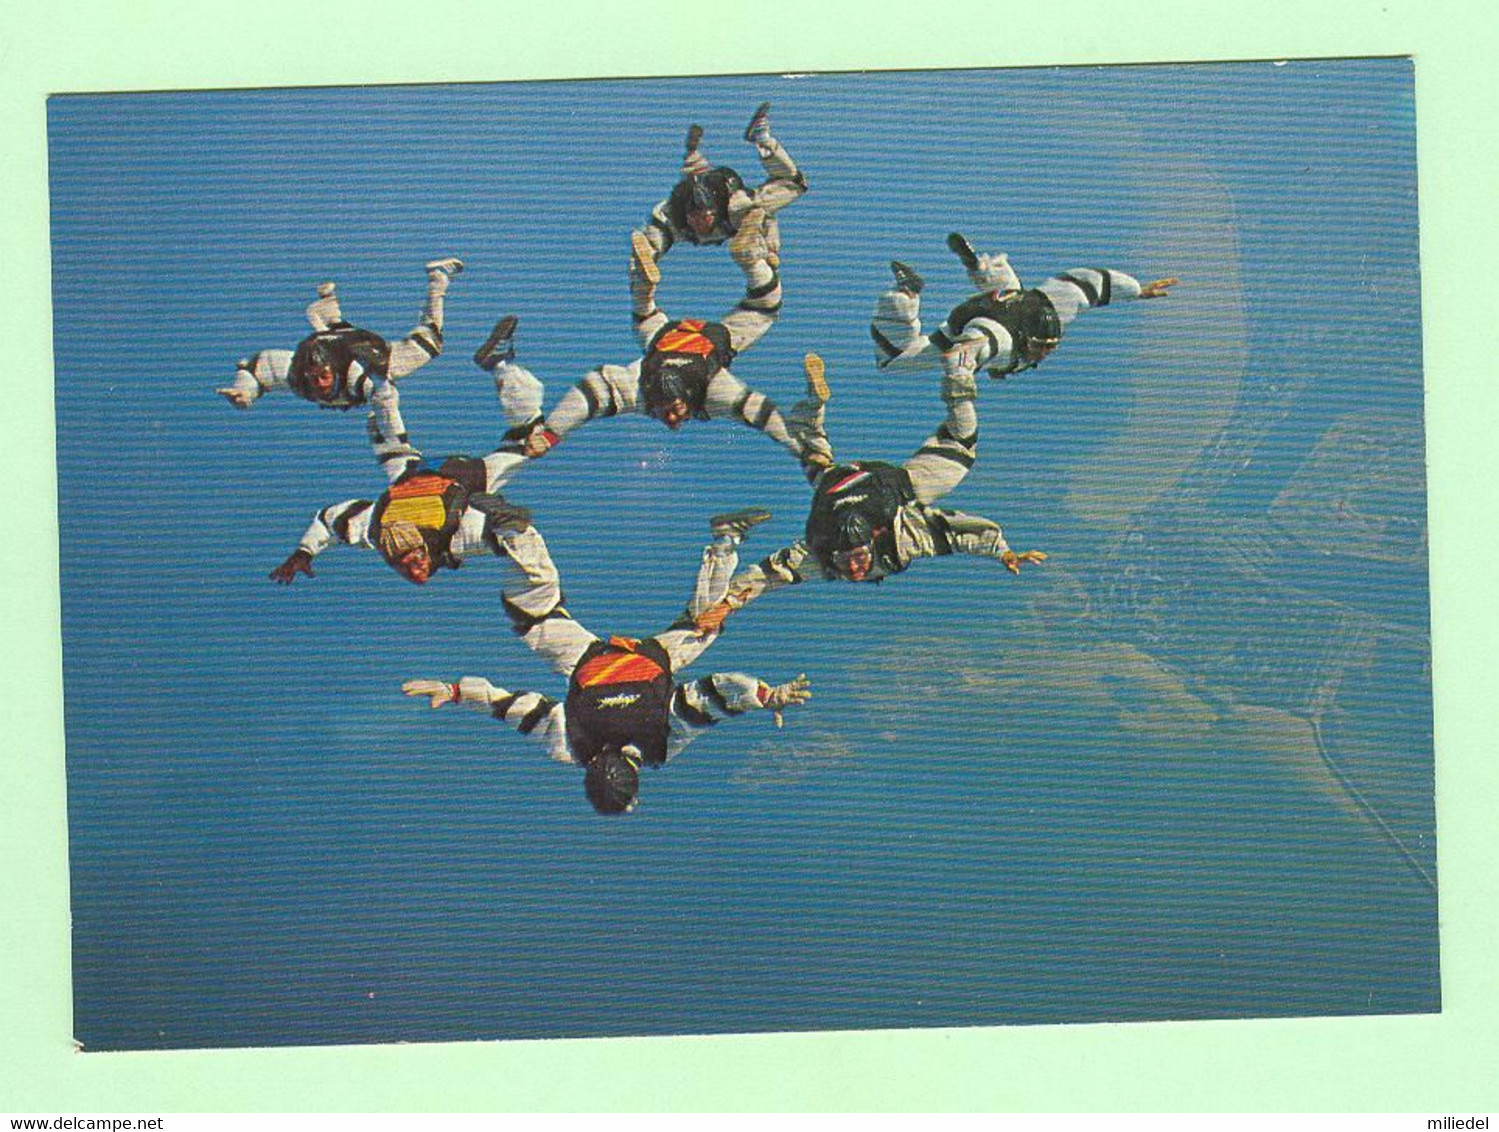 S091 - SPORT EXTREME - Parachutisme - Saut Relatif - Collection Dujardin, Pau - Parachutisme